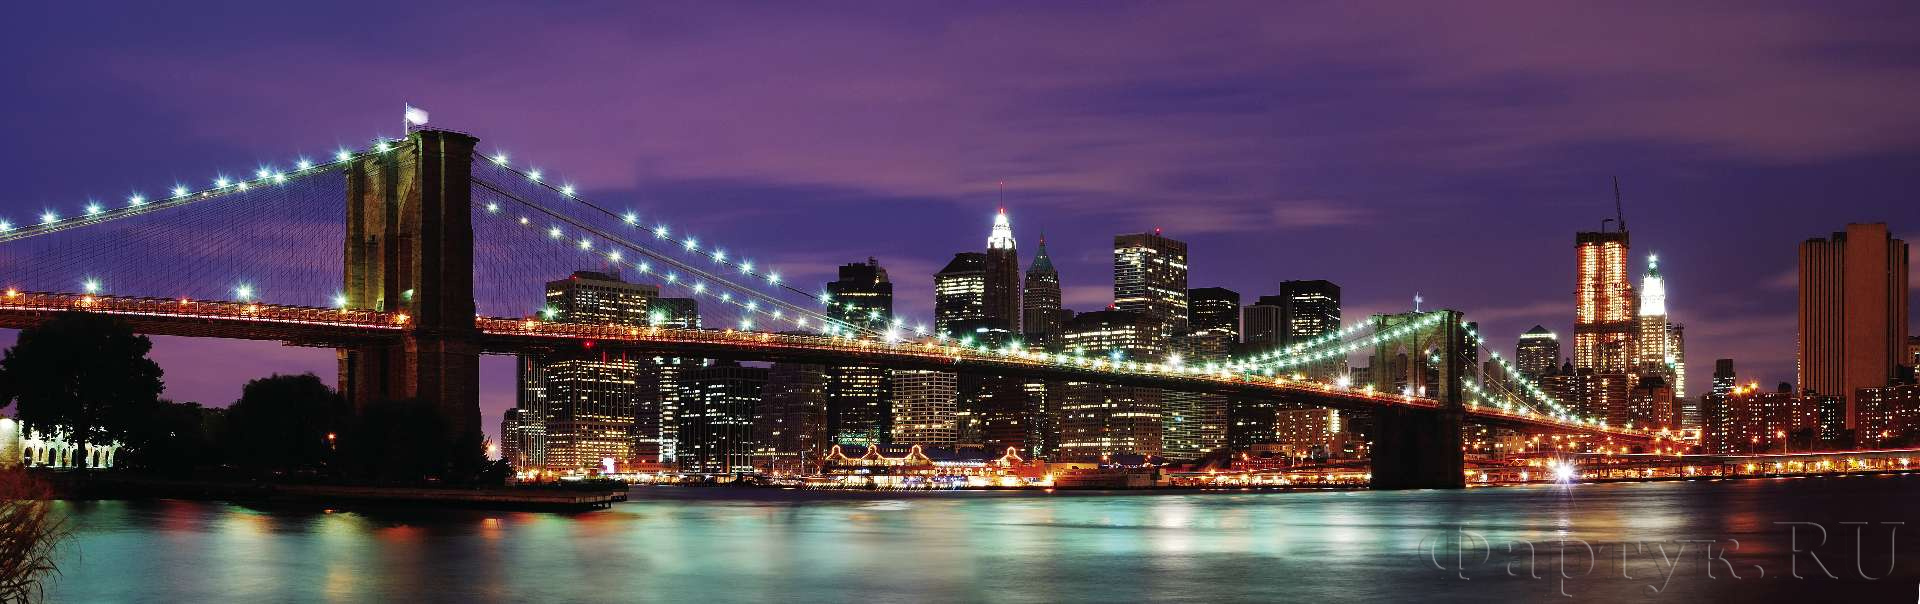 Бруклинский мост в фиолетовых оттенках